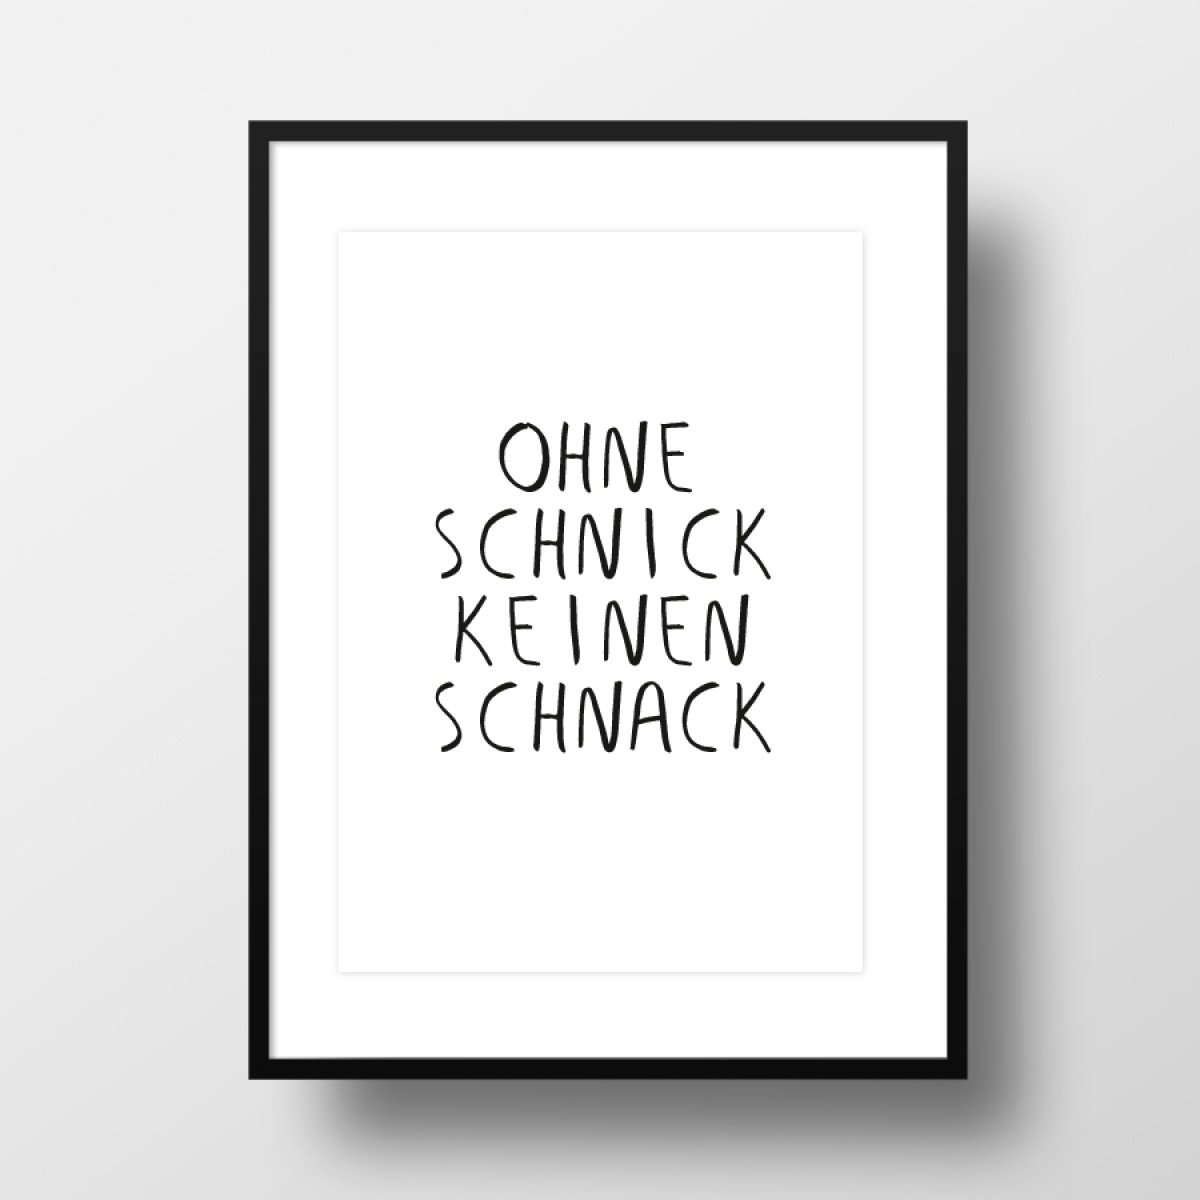 Amy & Kurt Berlin A4 Artprint "Schnick Schnack"